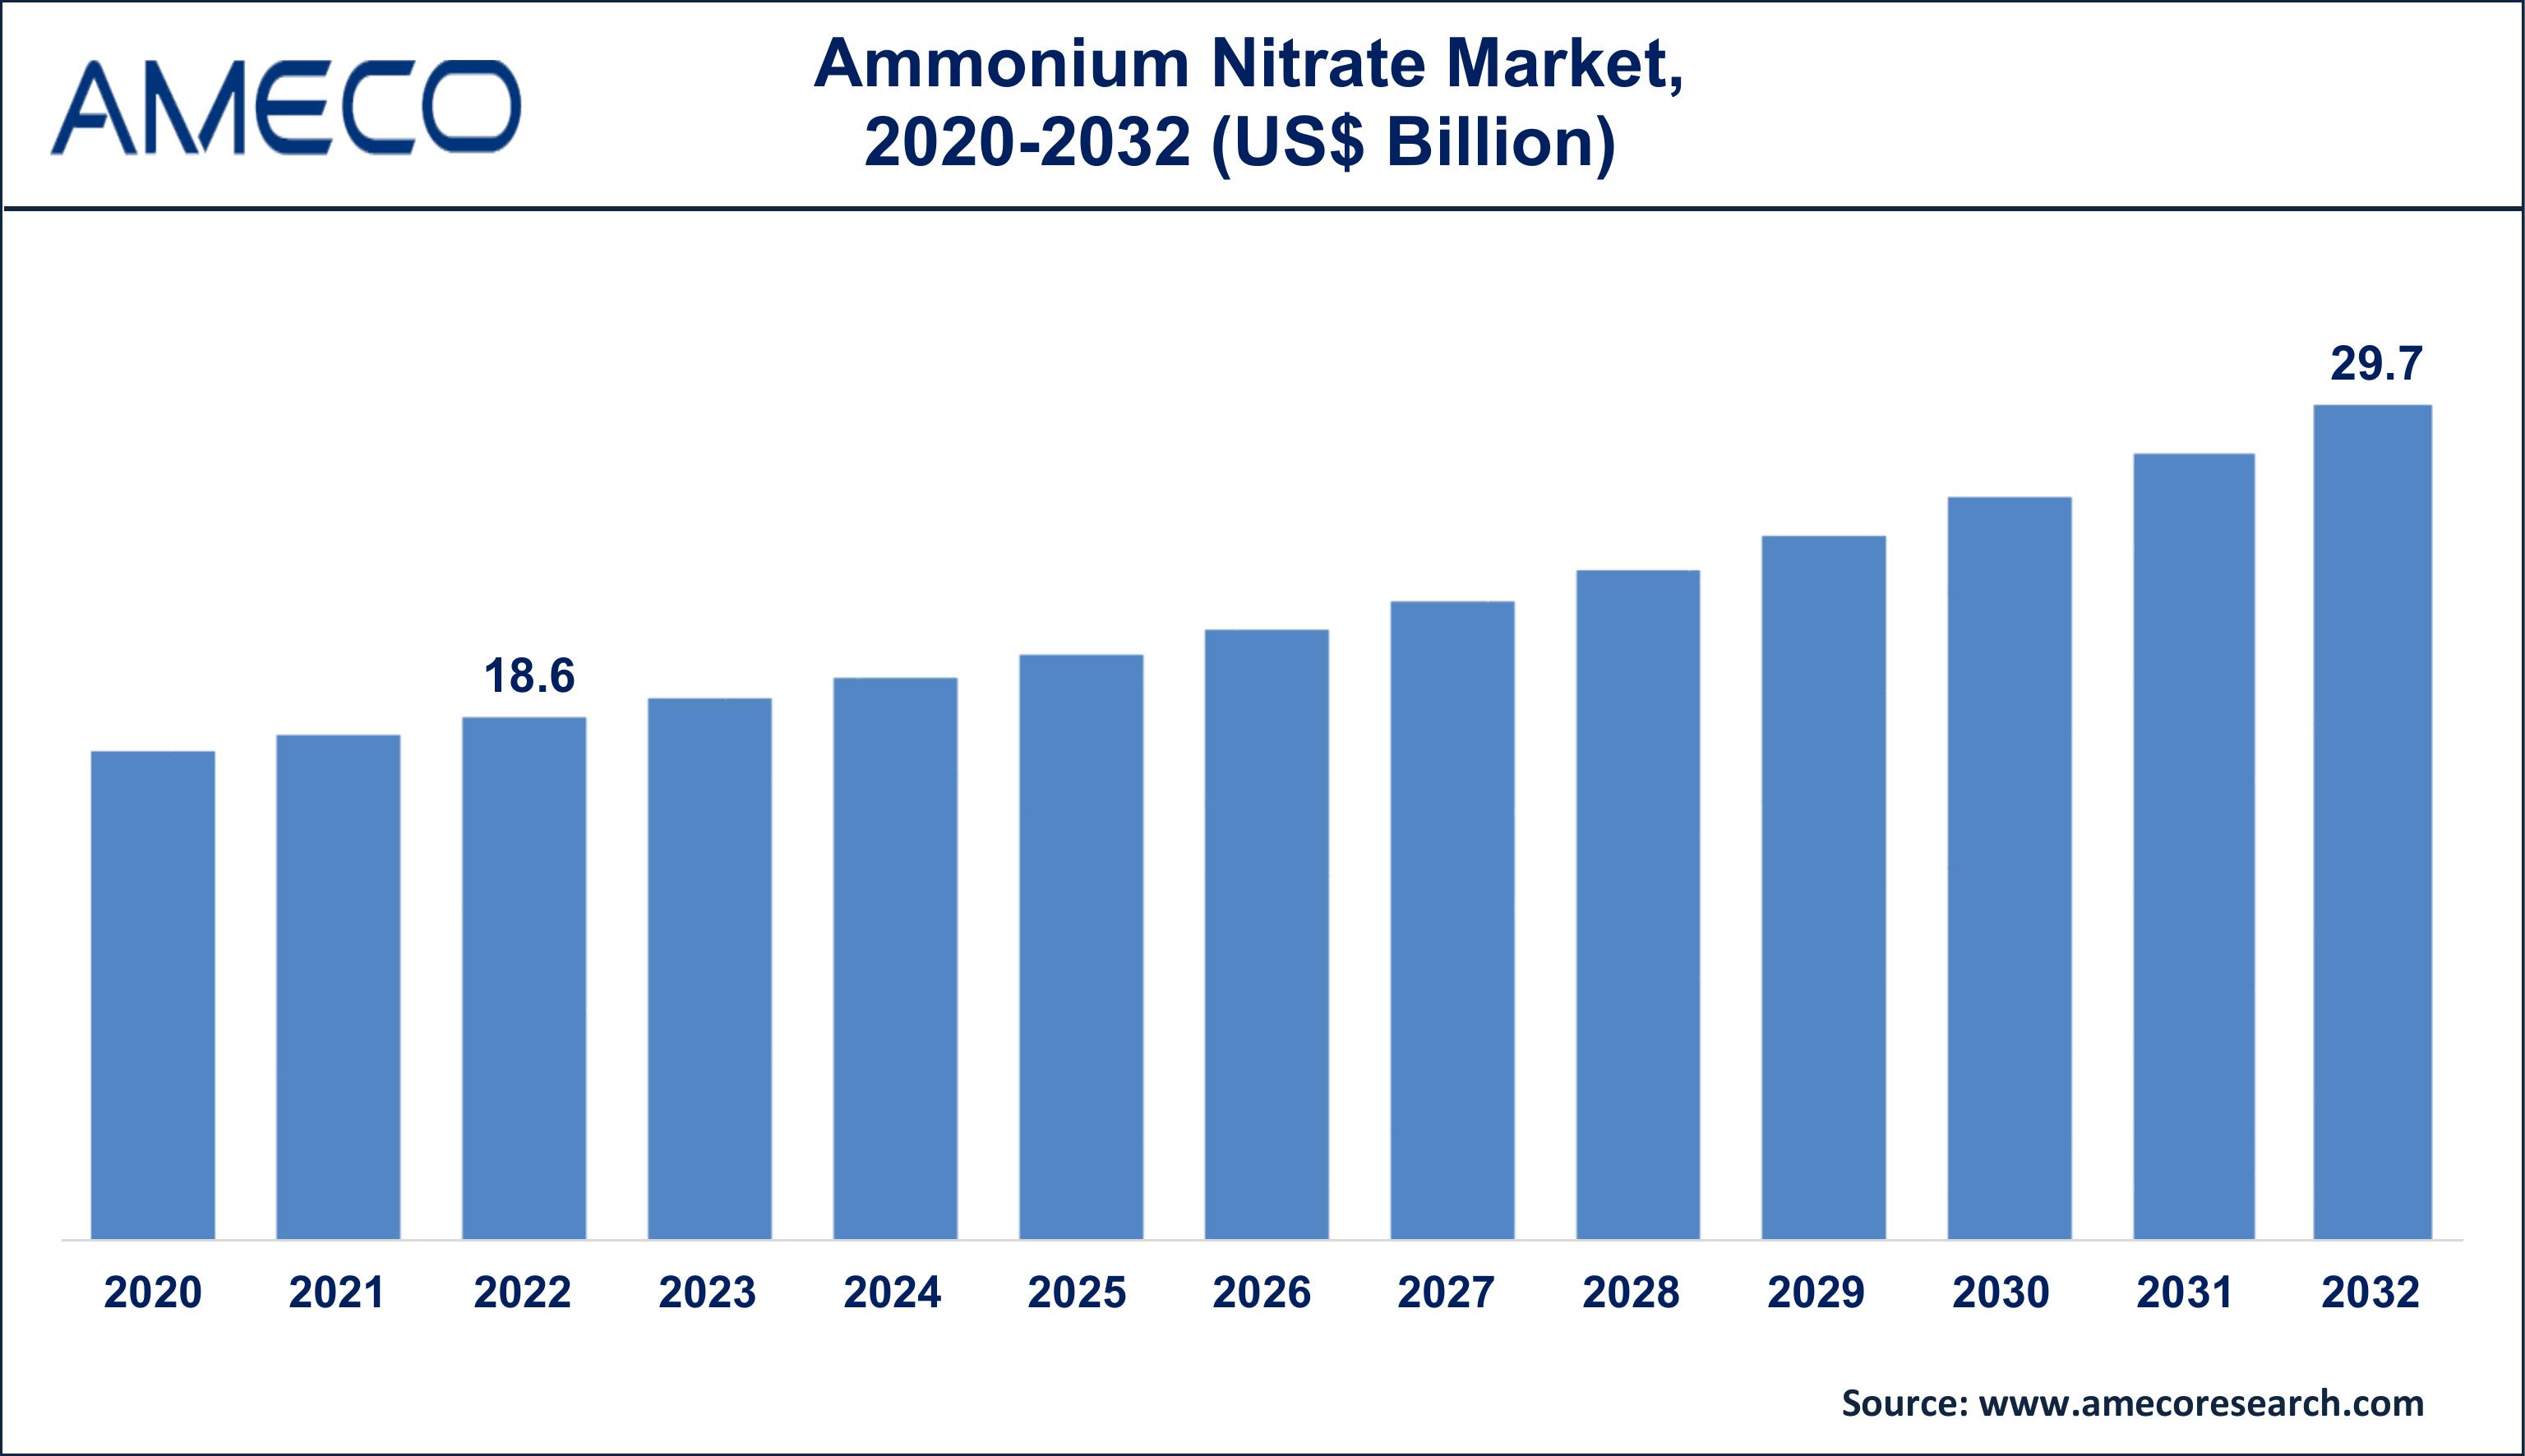 Ammonium Nitrate Market Dynamics